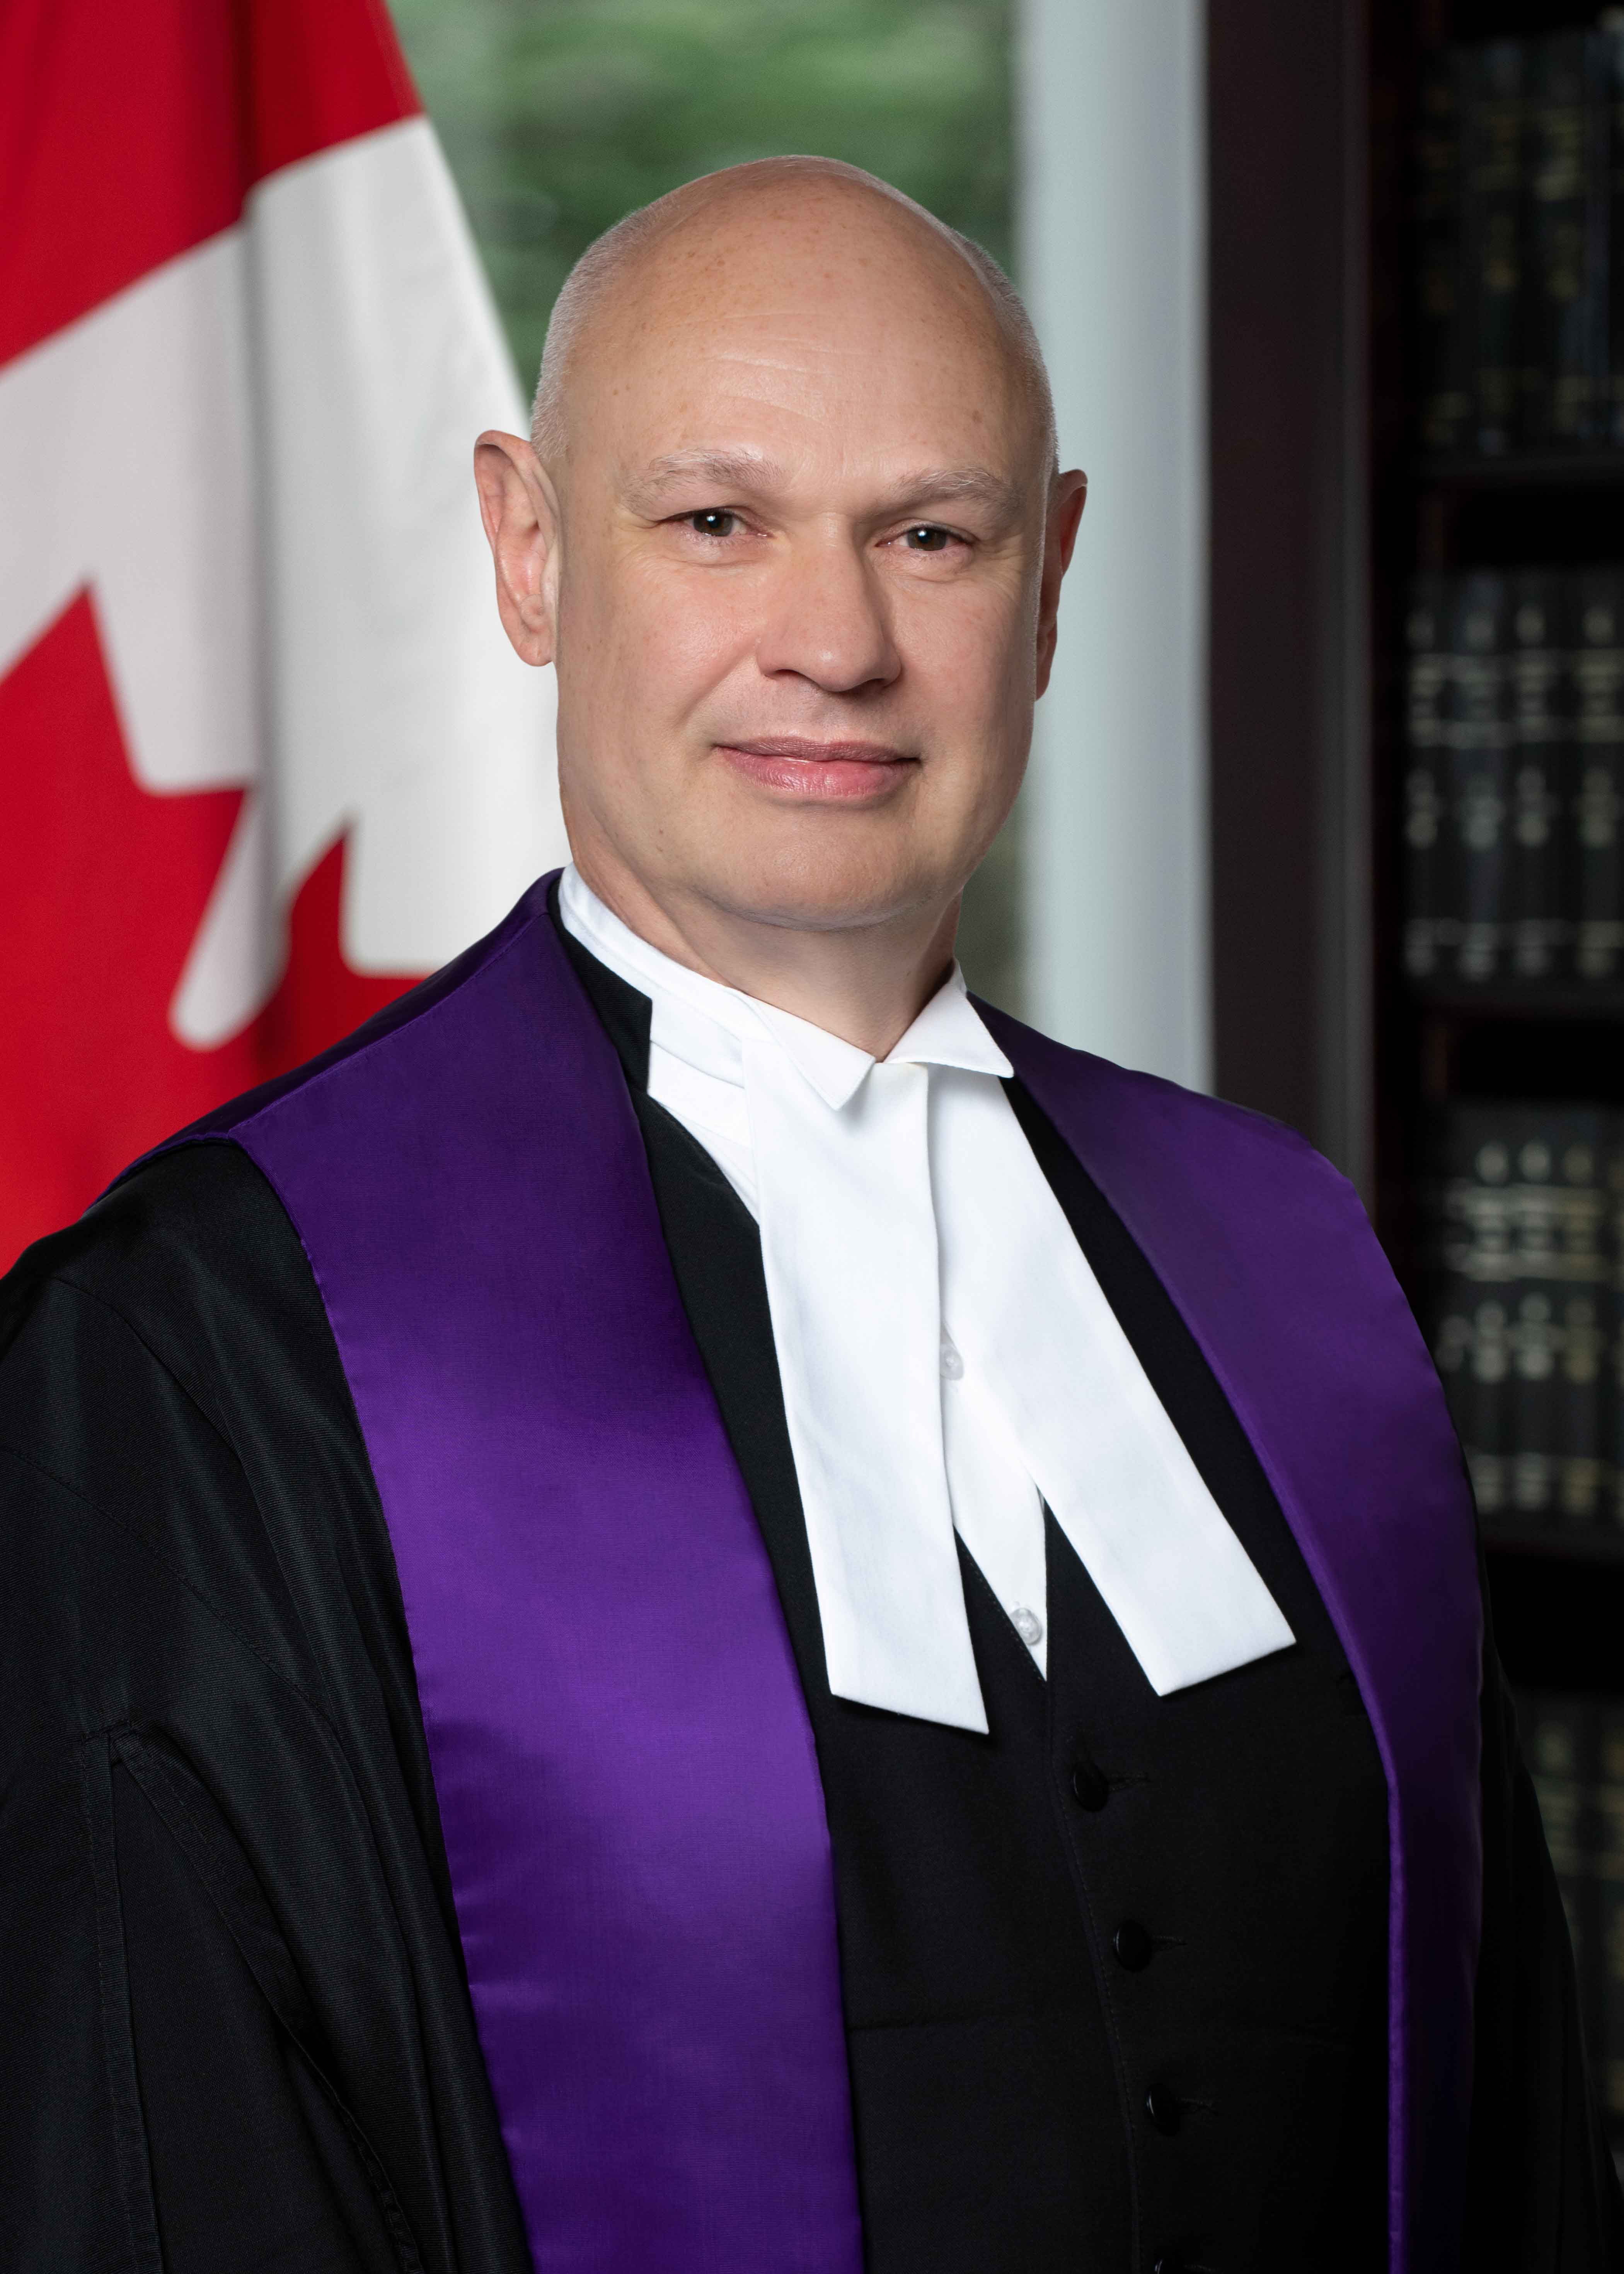 image: The Honourable John R. Owen